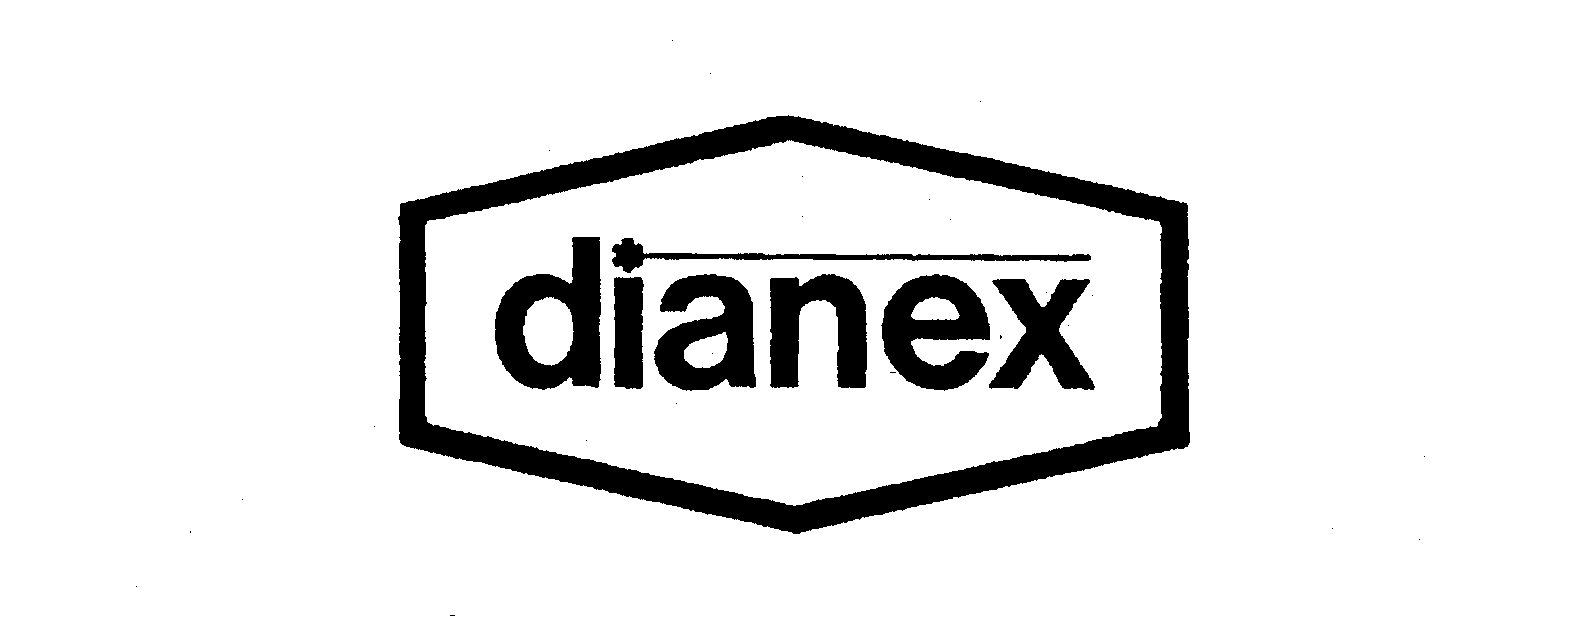 DIANEX